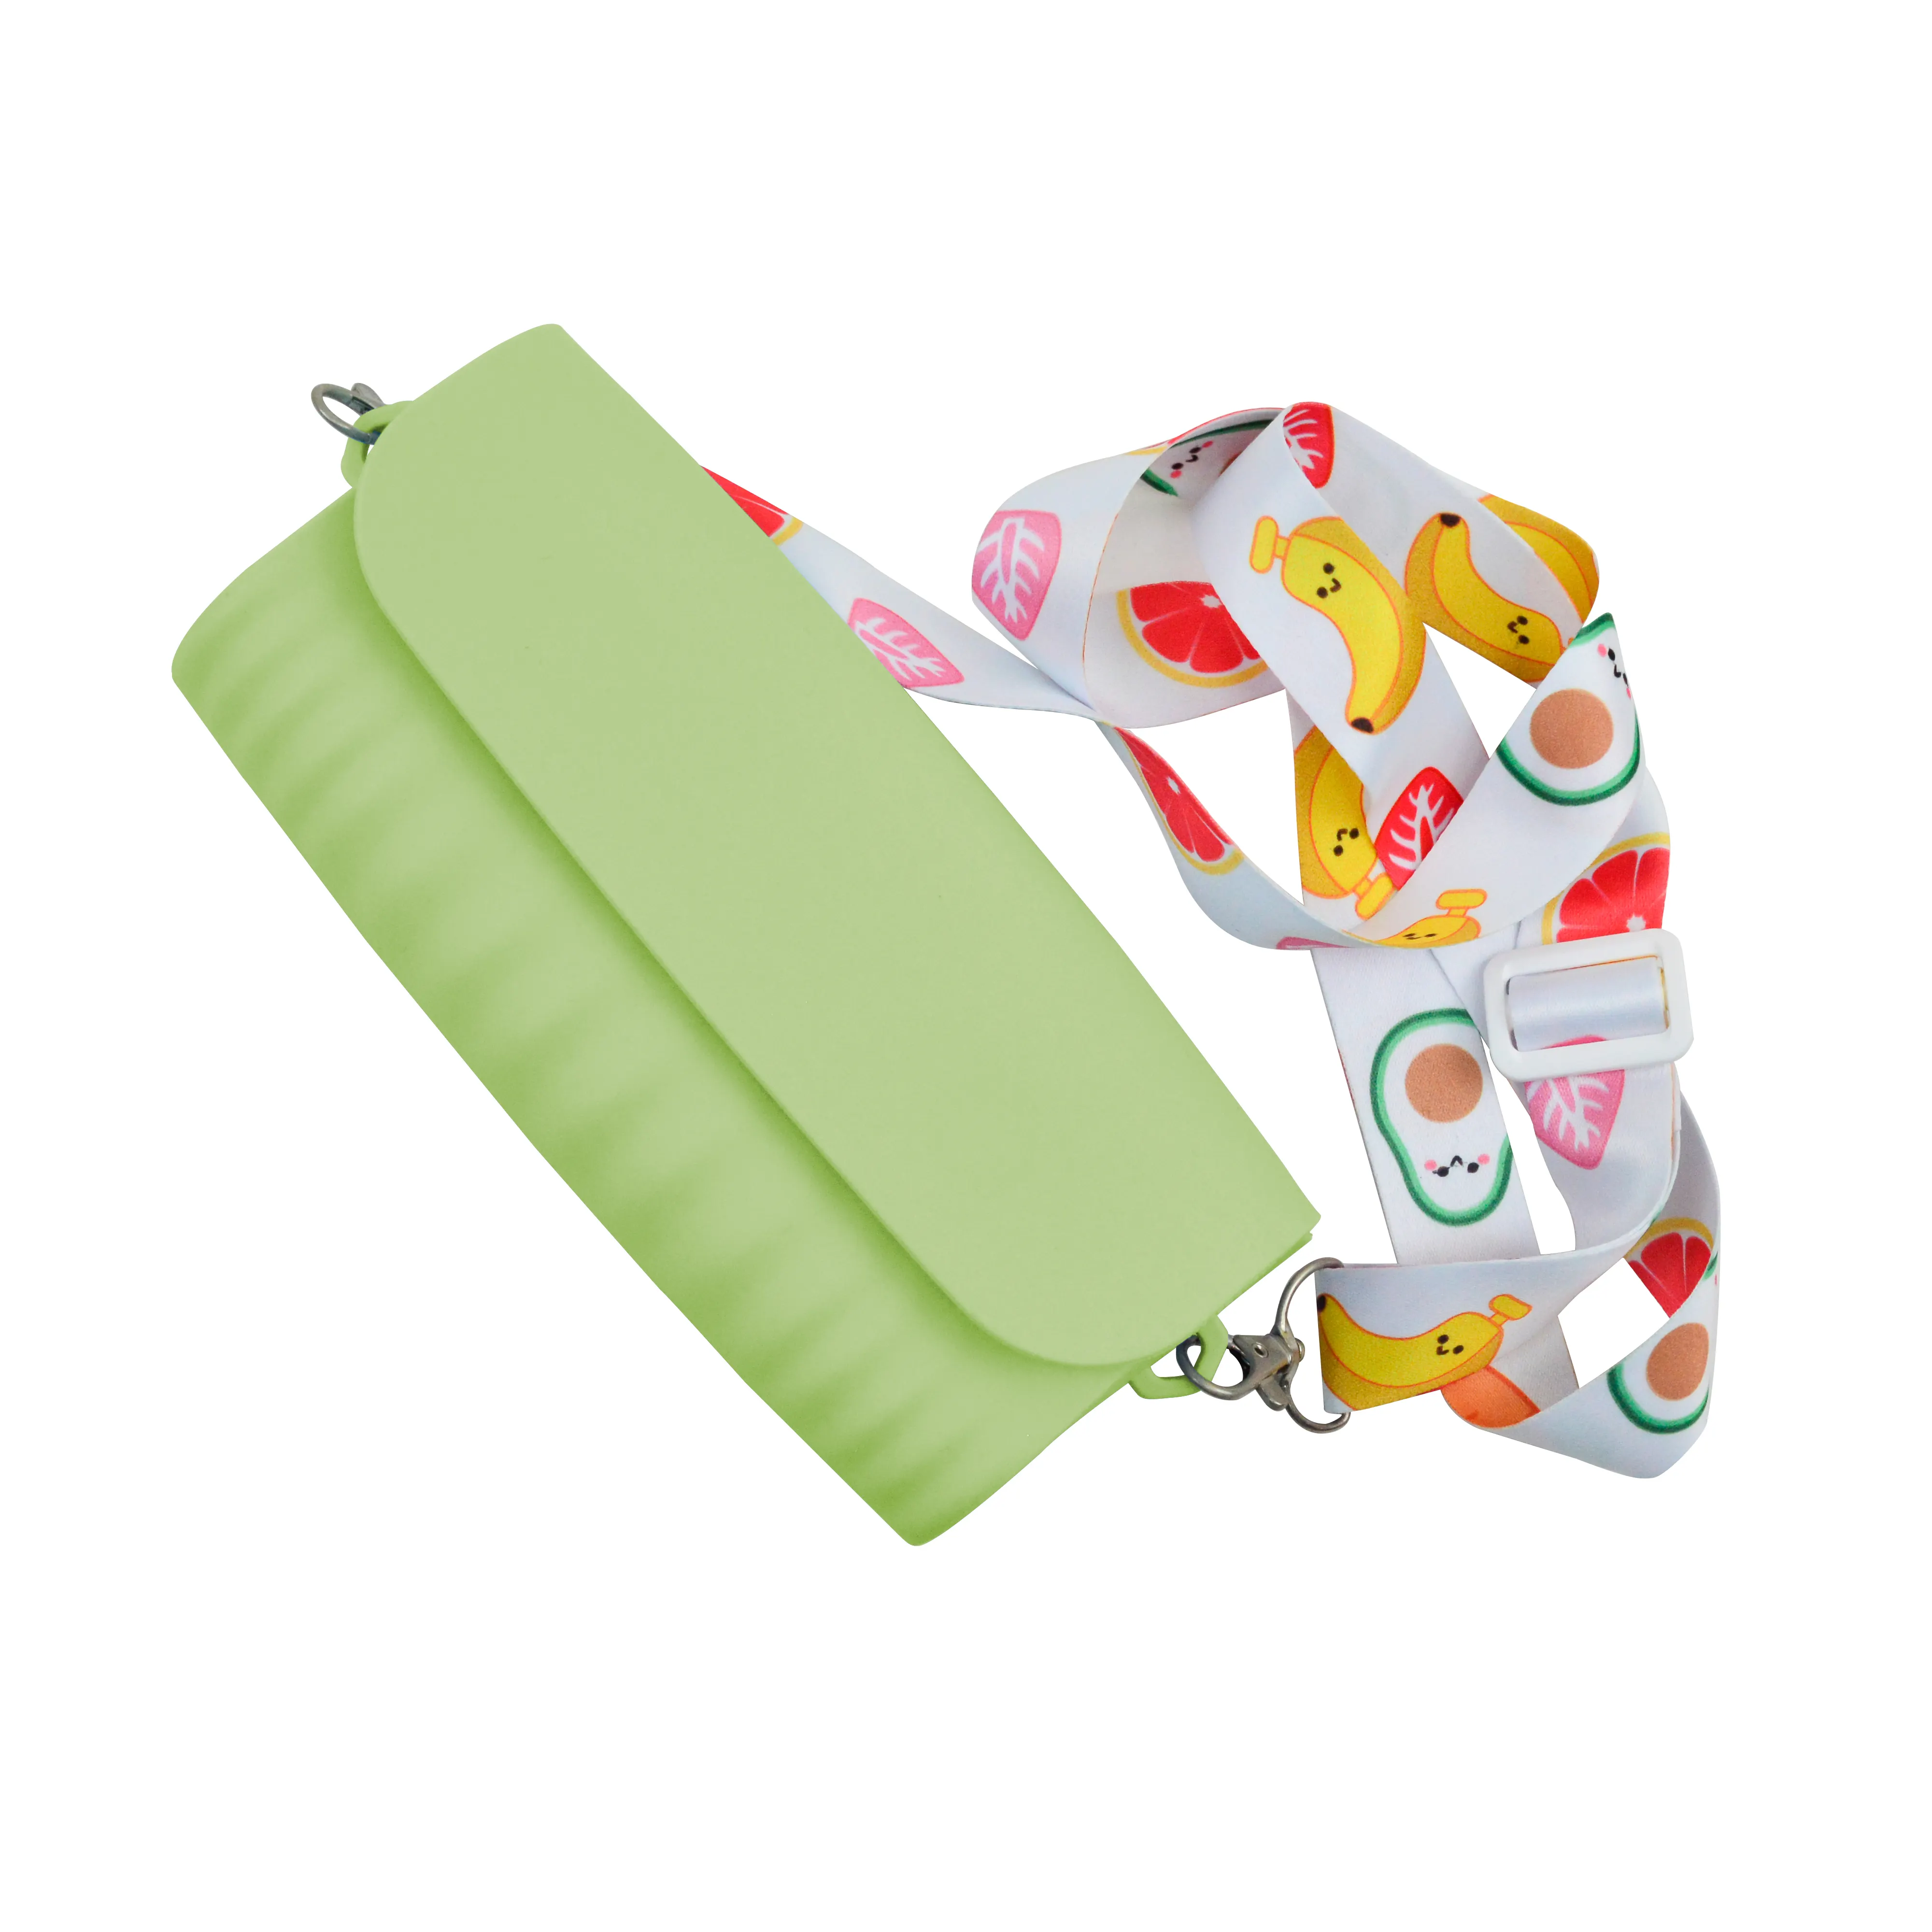 महिलाओं के लिए फैशनेबल सिलिकॉन मैग्नेटिक क्रॉस बॉडी बैग और हैंडबैग, मेकअप शॉपिंग के लिए बिल्कुल सुविधाजनक